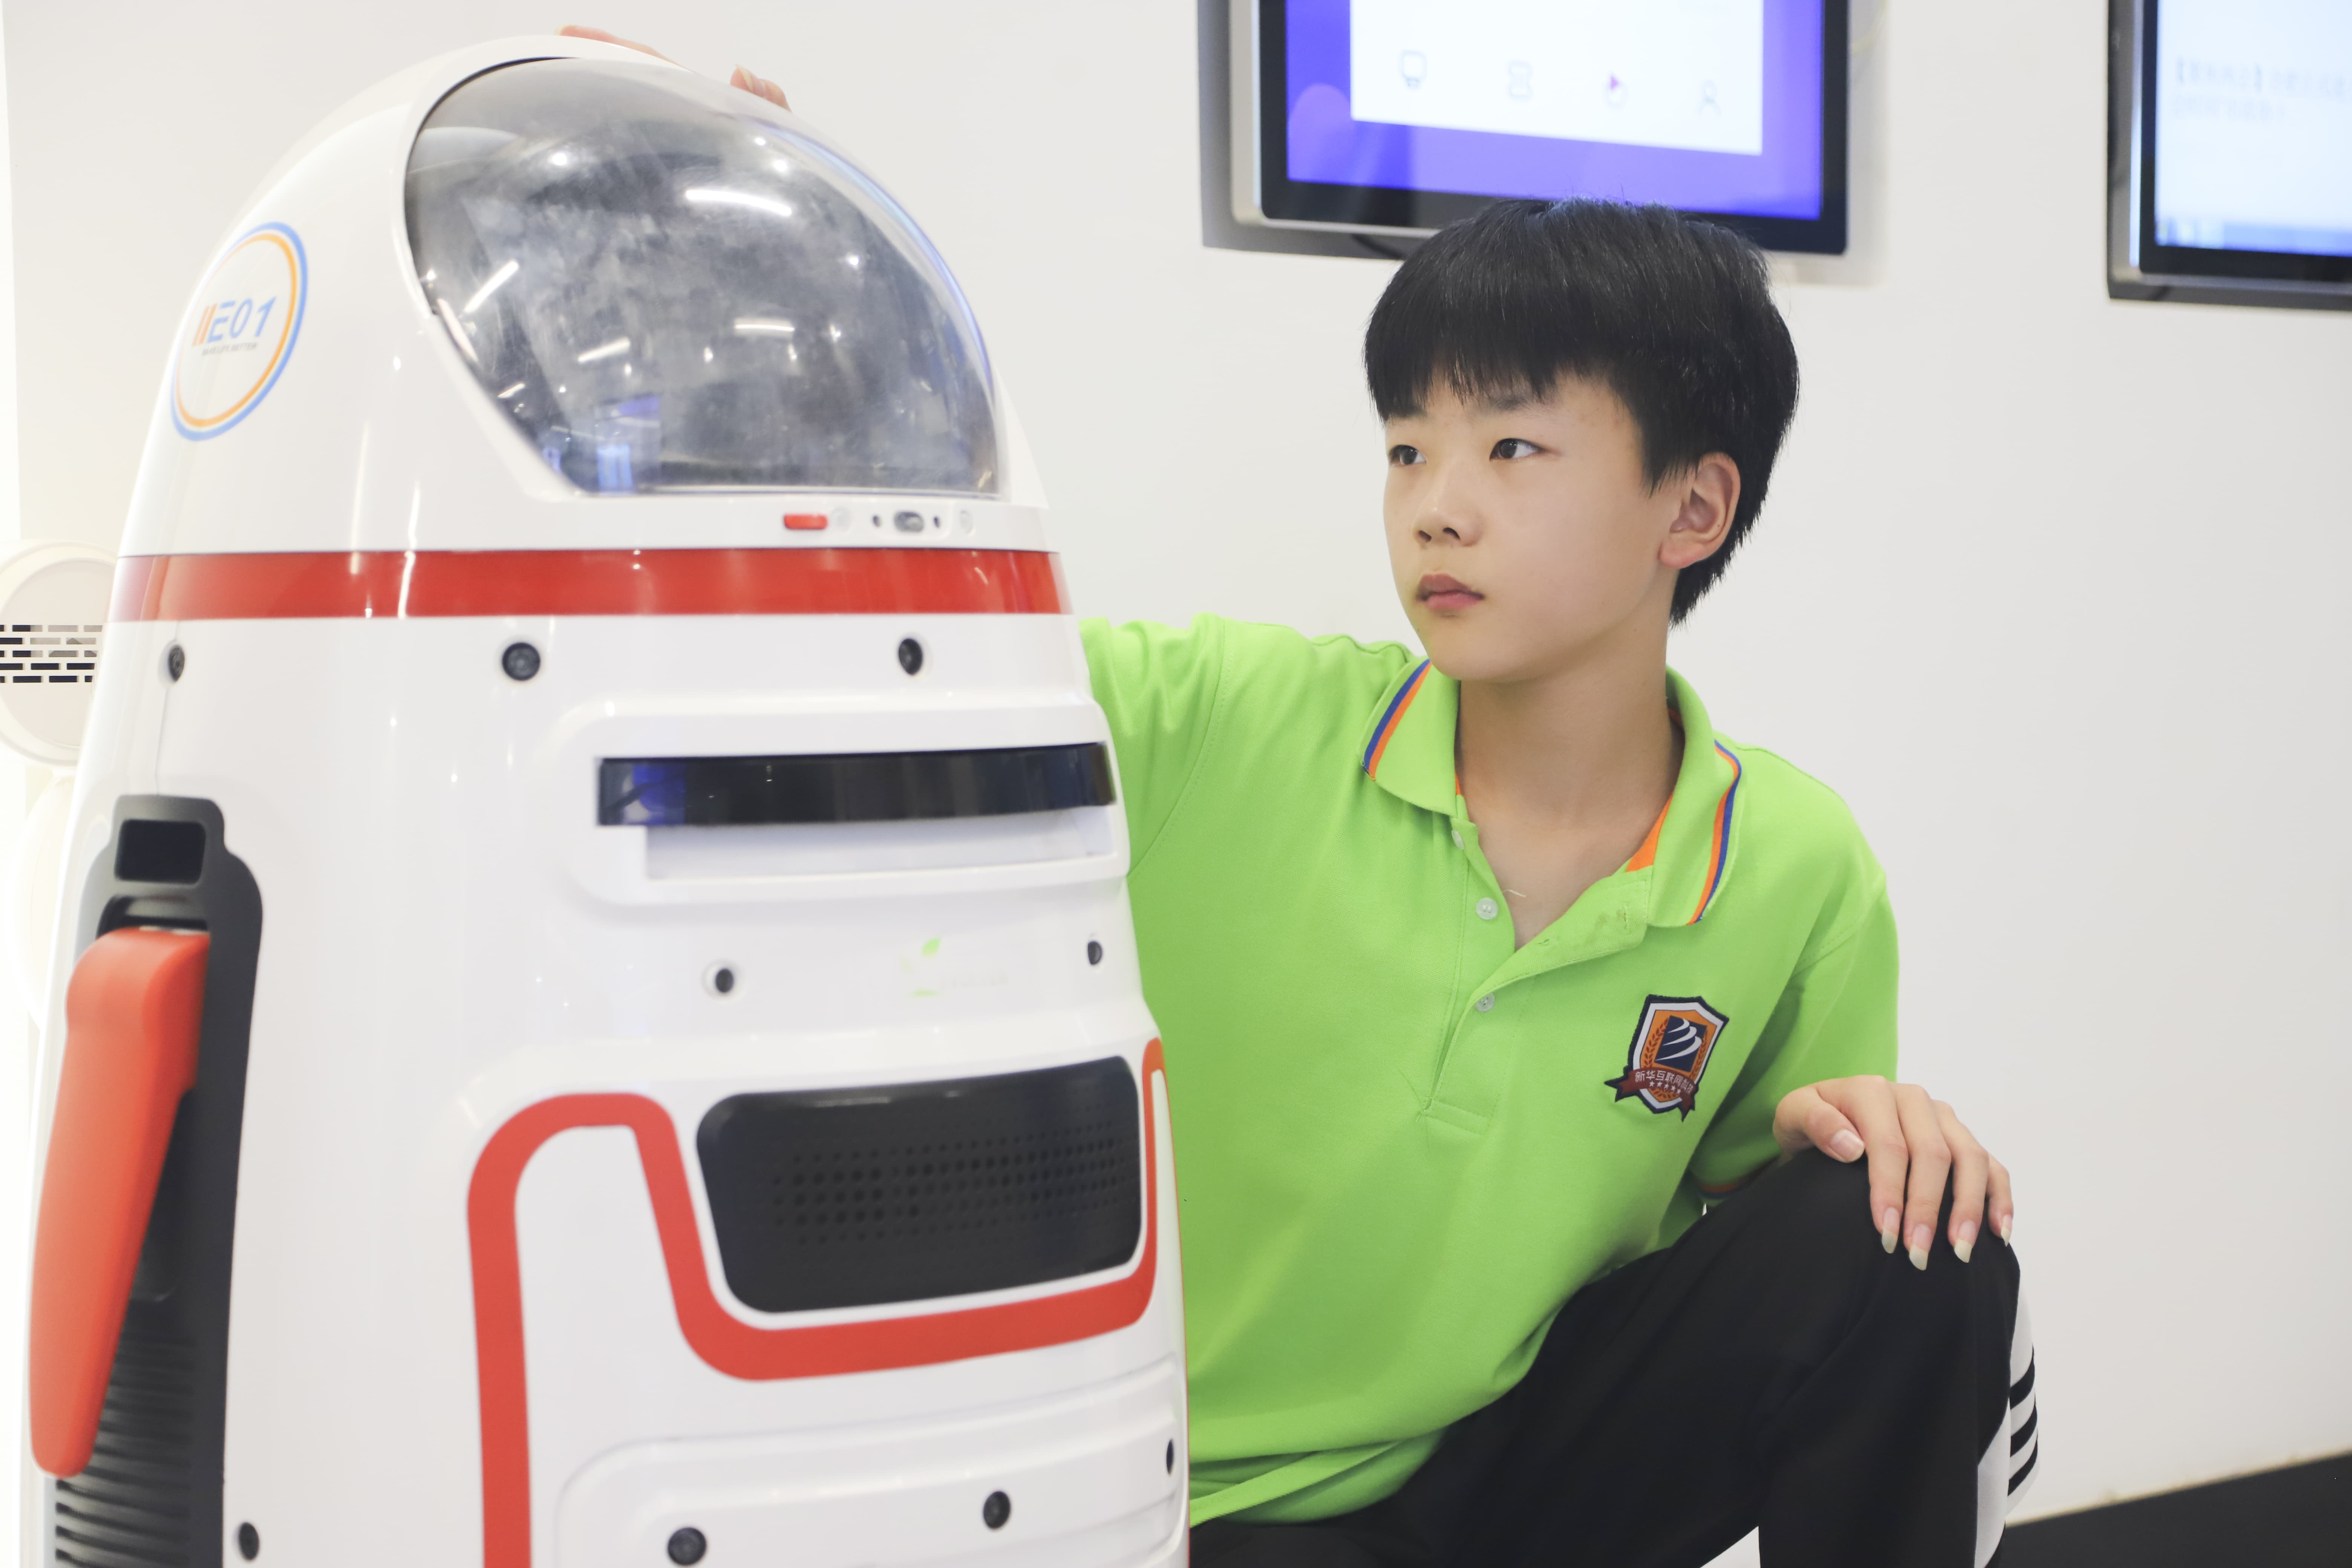 学生与智能机器人互动